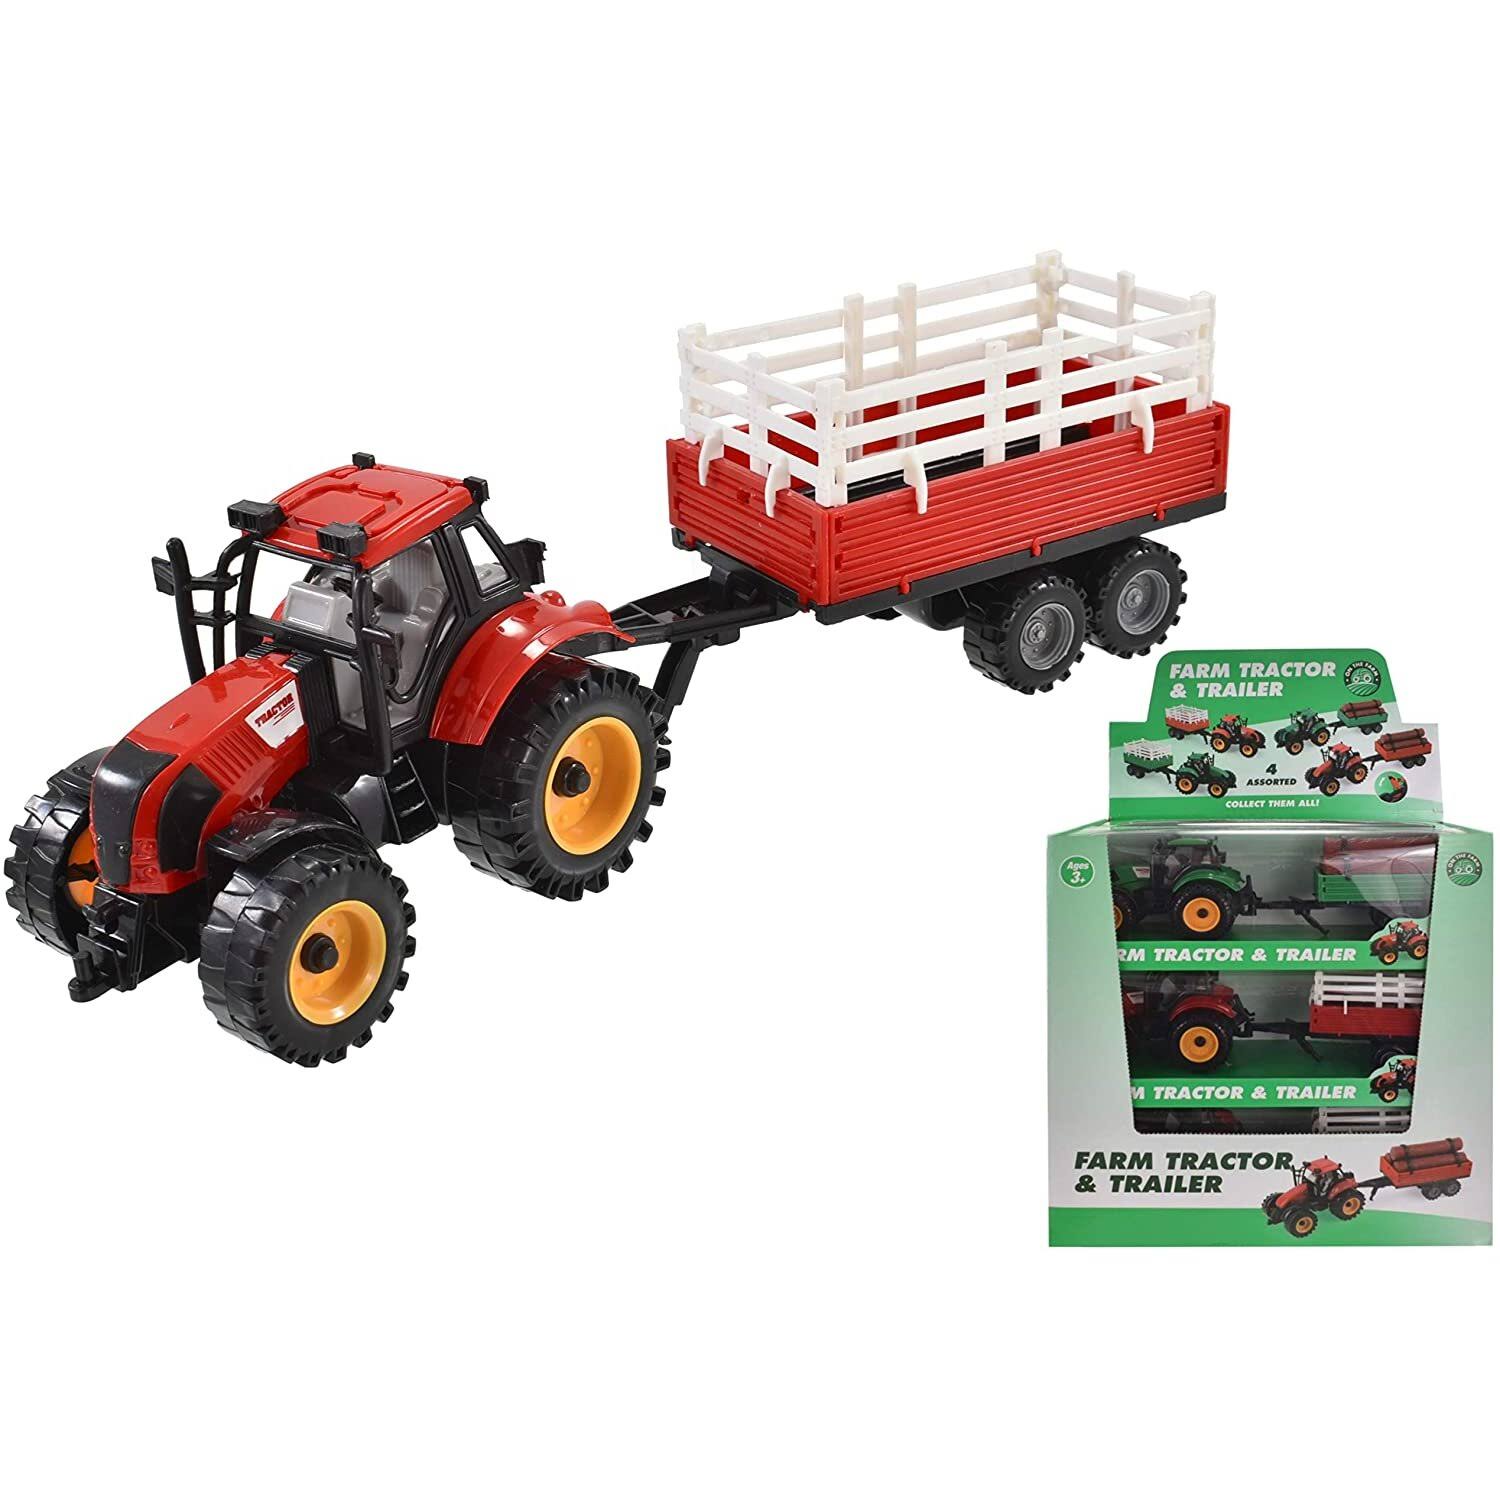 Plastic Farm Tractor & Trailer - Medium